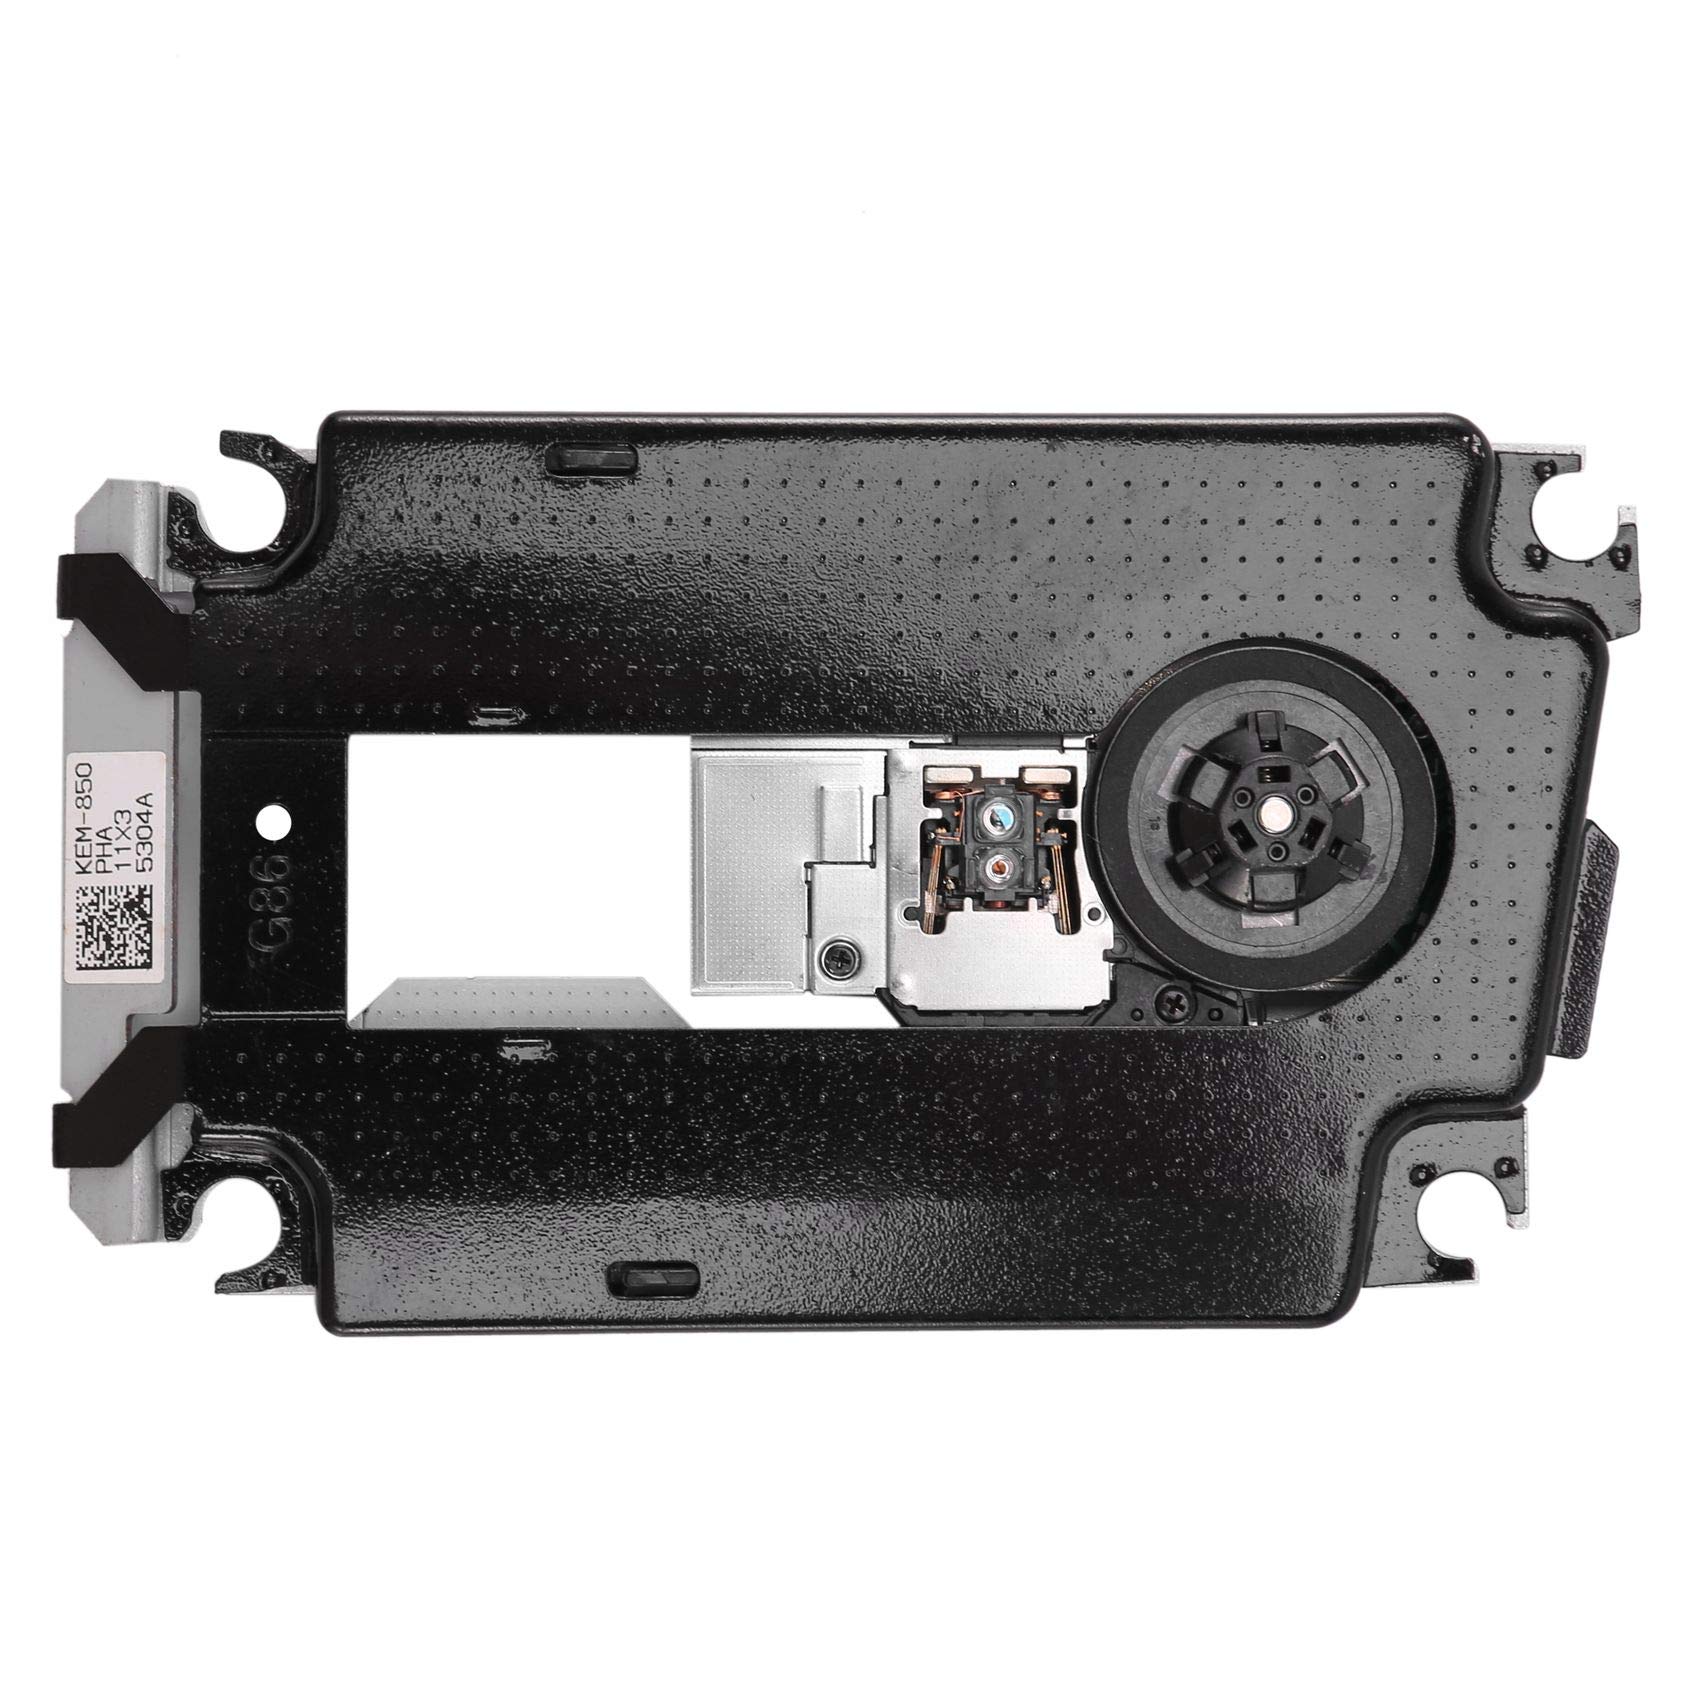 Fltaheroo KES-850A KEM-850 Blu-Ray Objektiv Deck Mechanismus für PS3 Super Slim CECH-4Xxx CECH-4000 CECH-4001A CECH-4001B